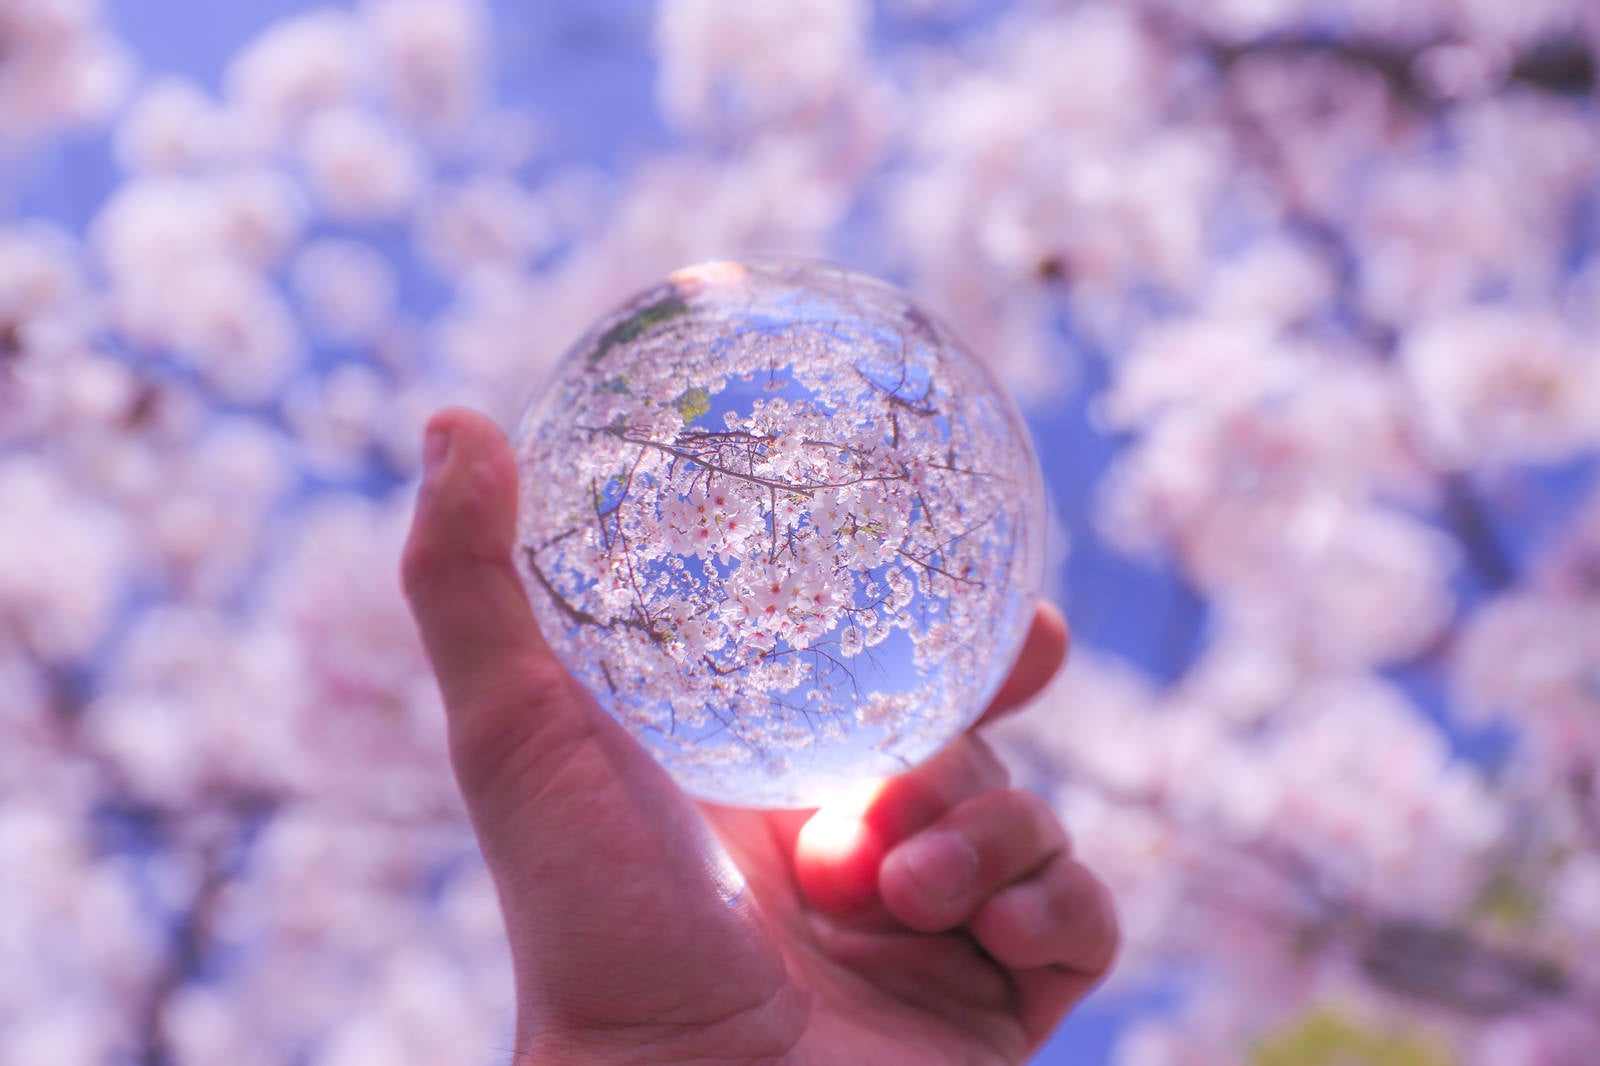 「満開の桜と水晶玉」の写真